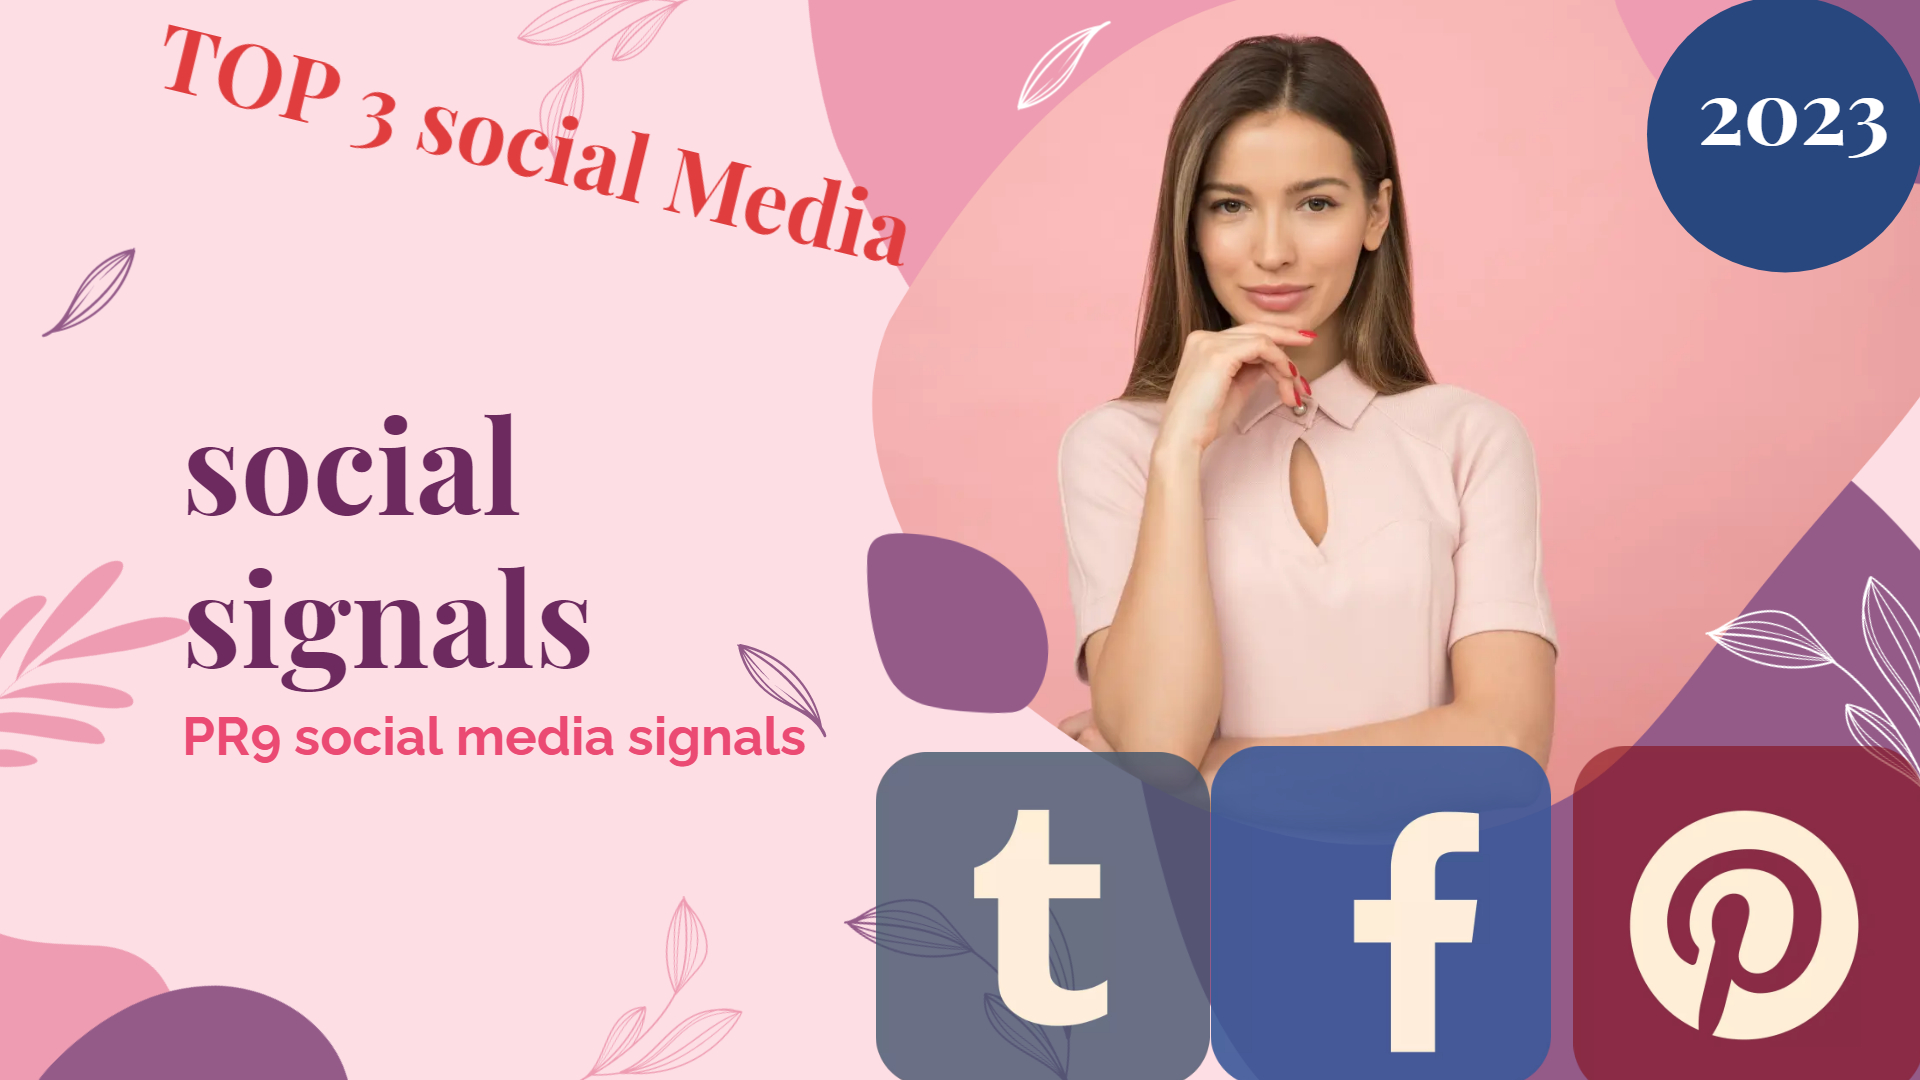 15,000 Social Signals Come From Top 3 Social Media Sites